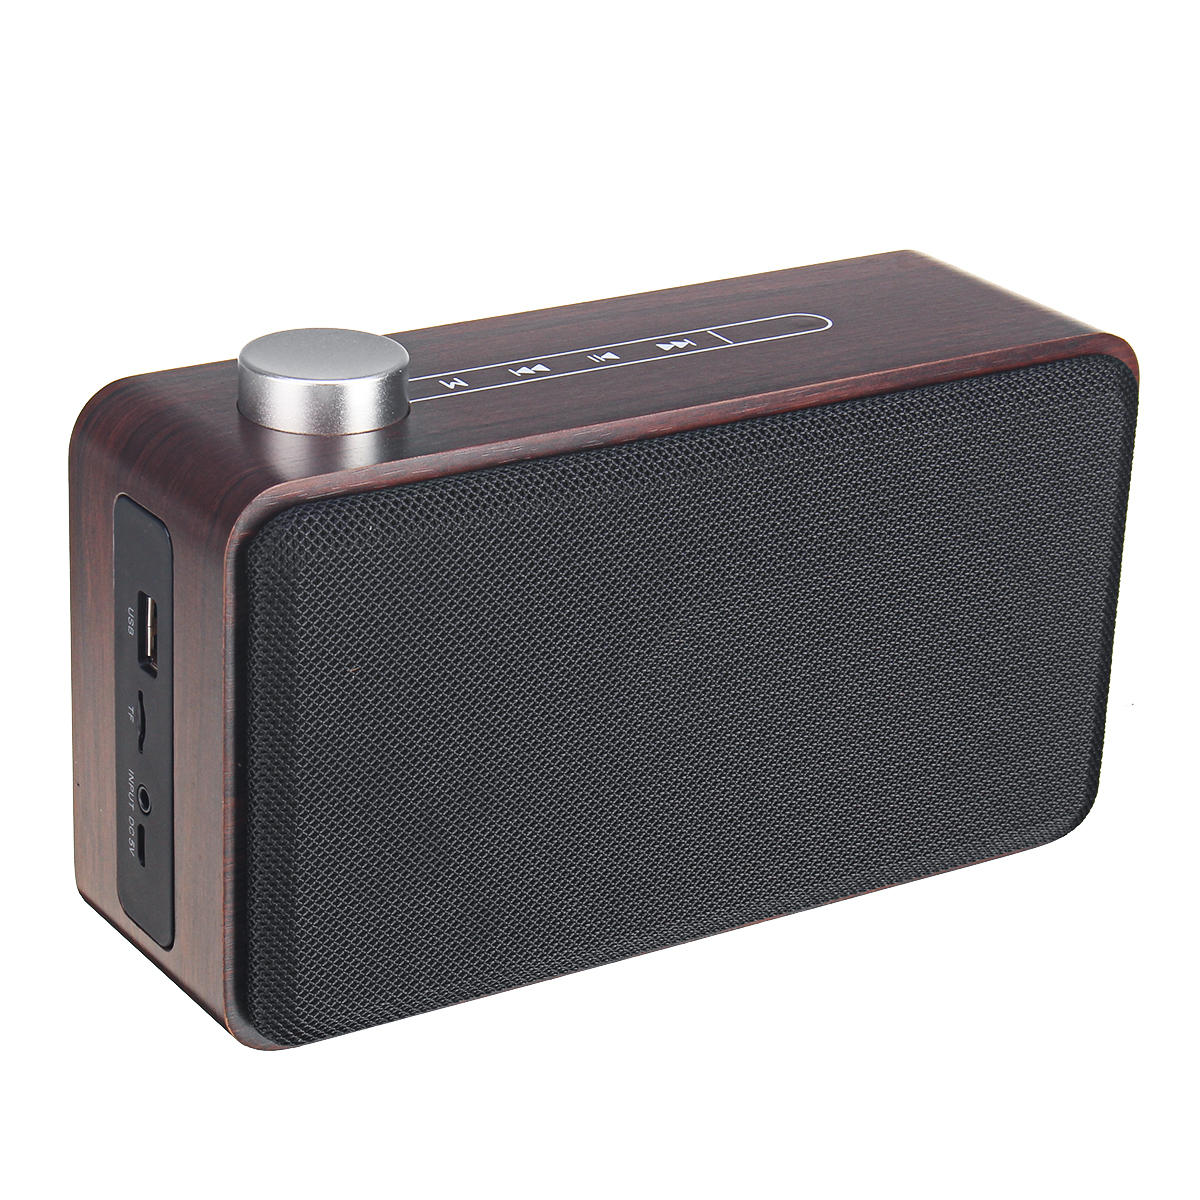 W5A Altavoz inalámbrico de madera con Bluetooth con altavoz Bluetooth estéreo portátil con TF u u disco de 3.5mm